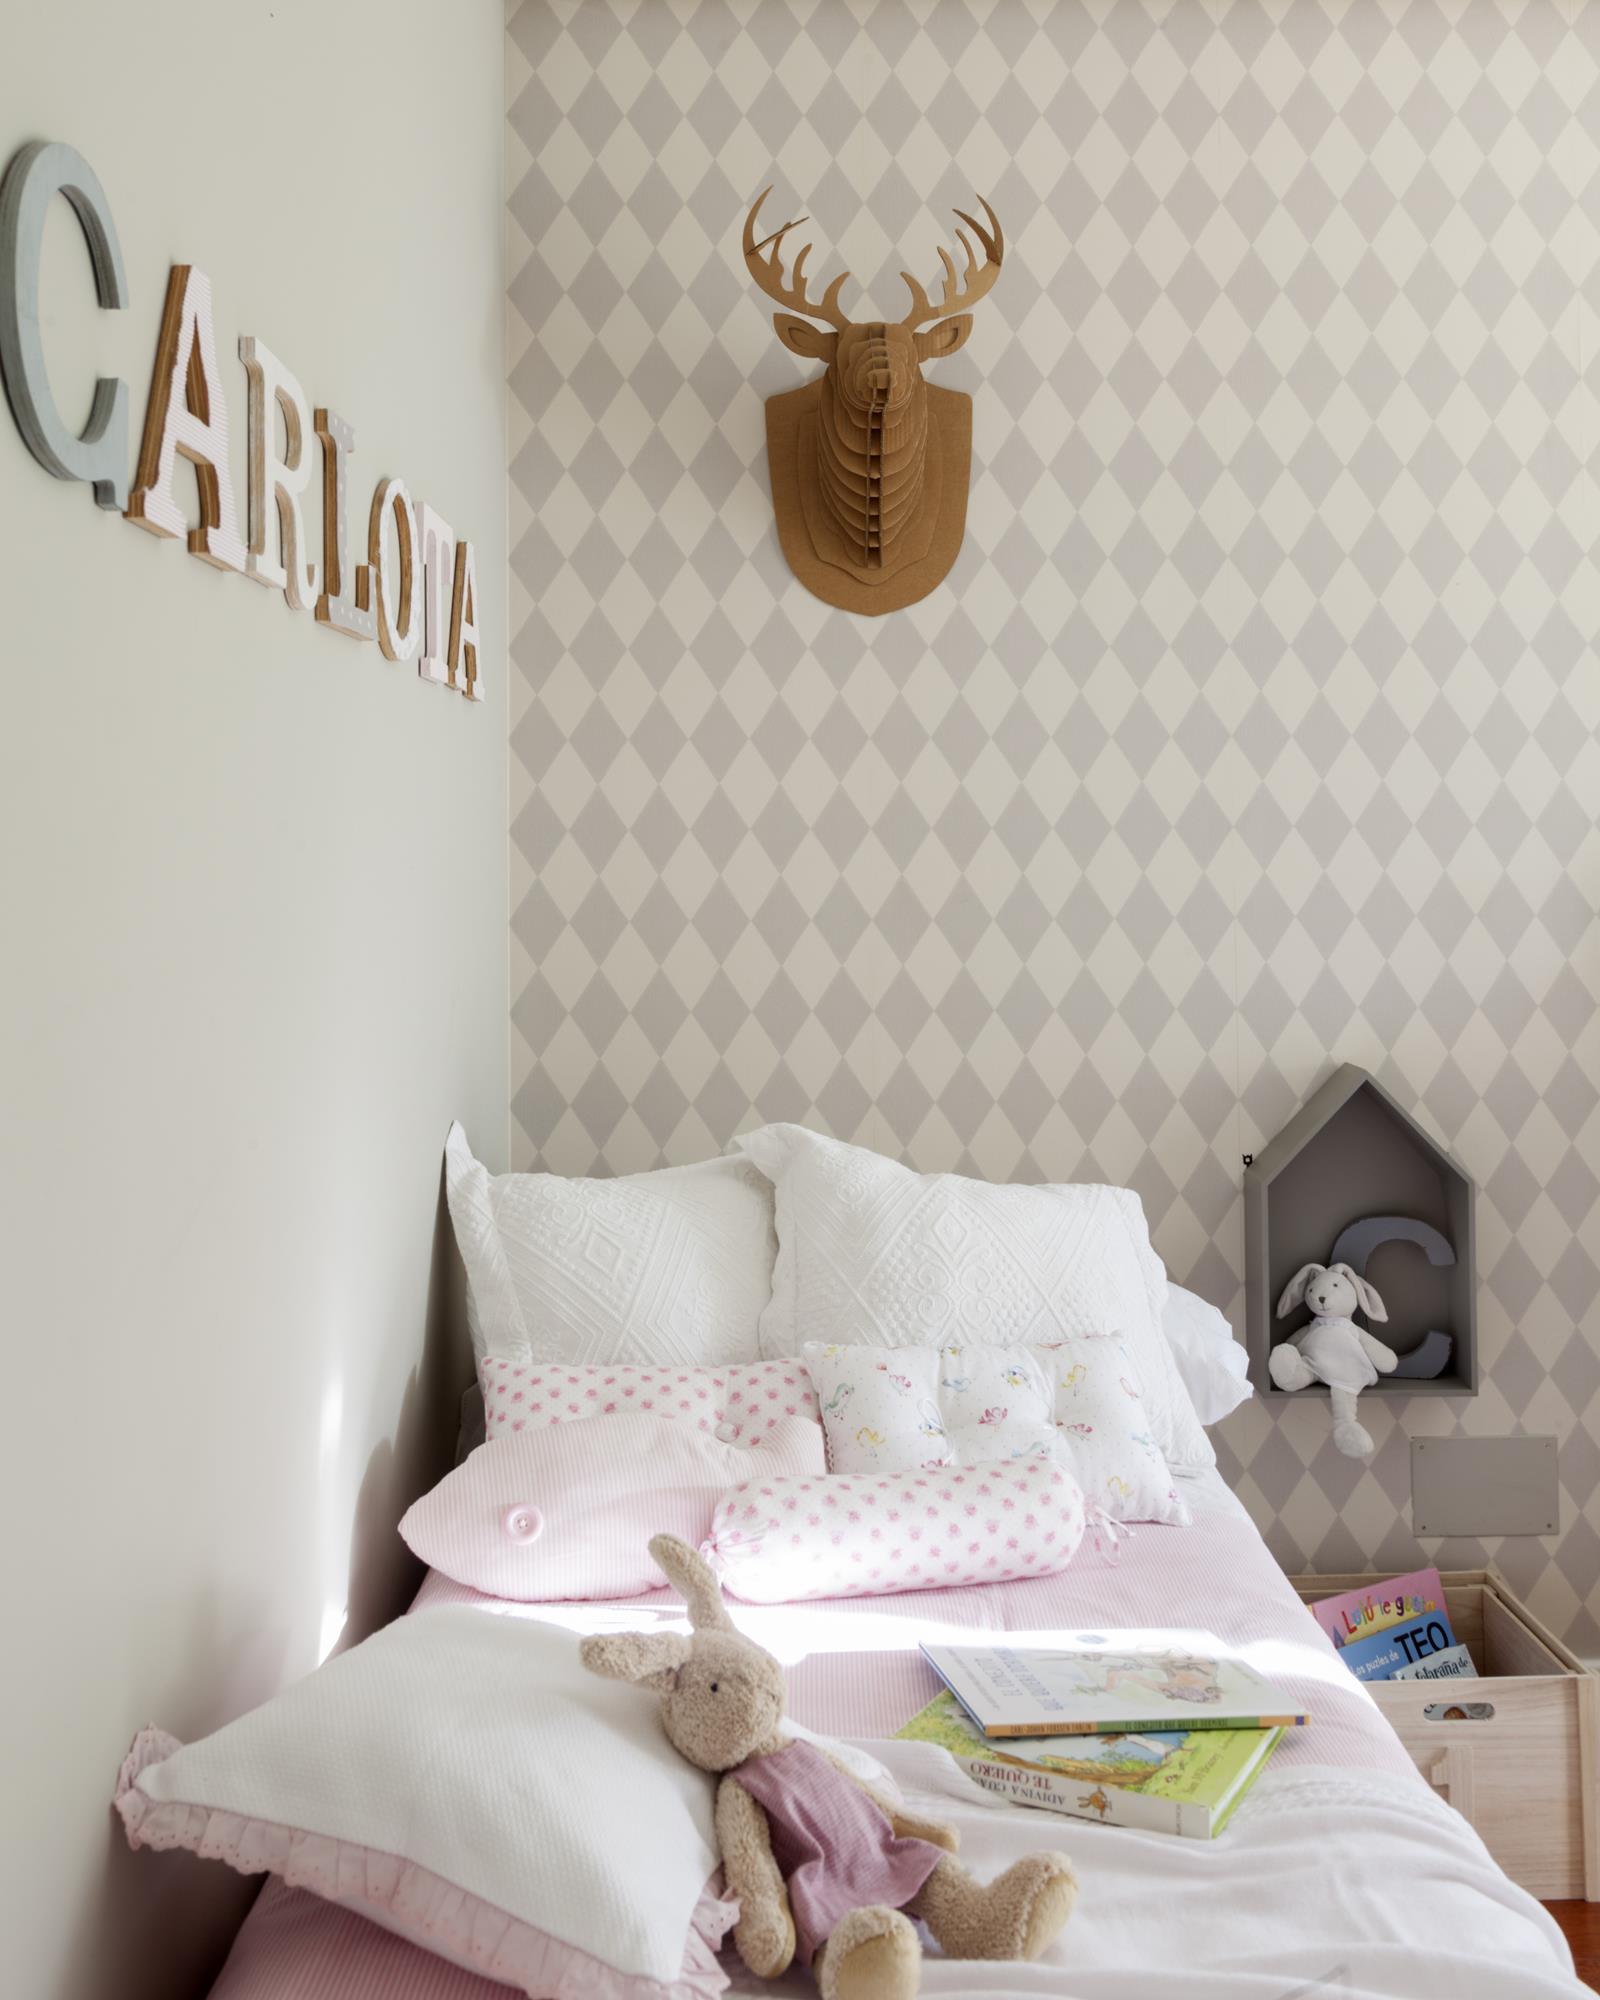 00433517 O (Copy). dormitorio infantil con papel pintado y cabeza de reno de carton